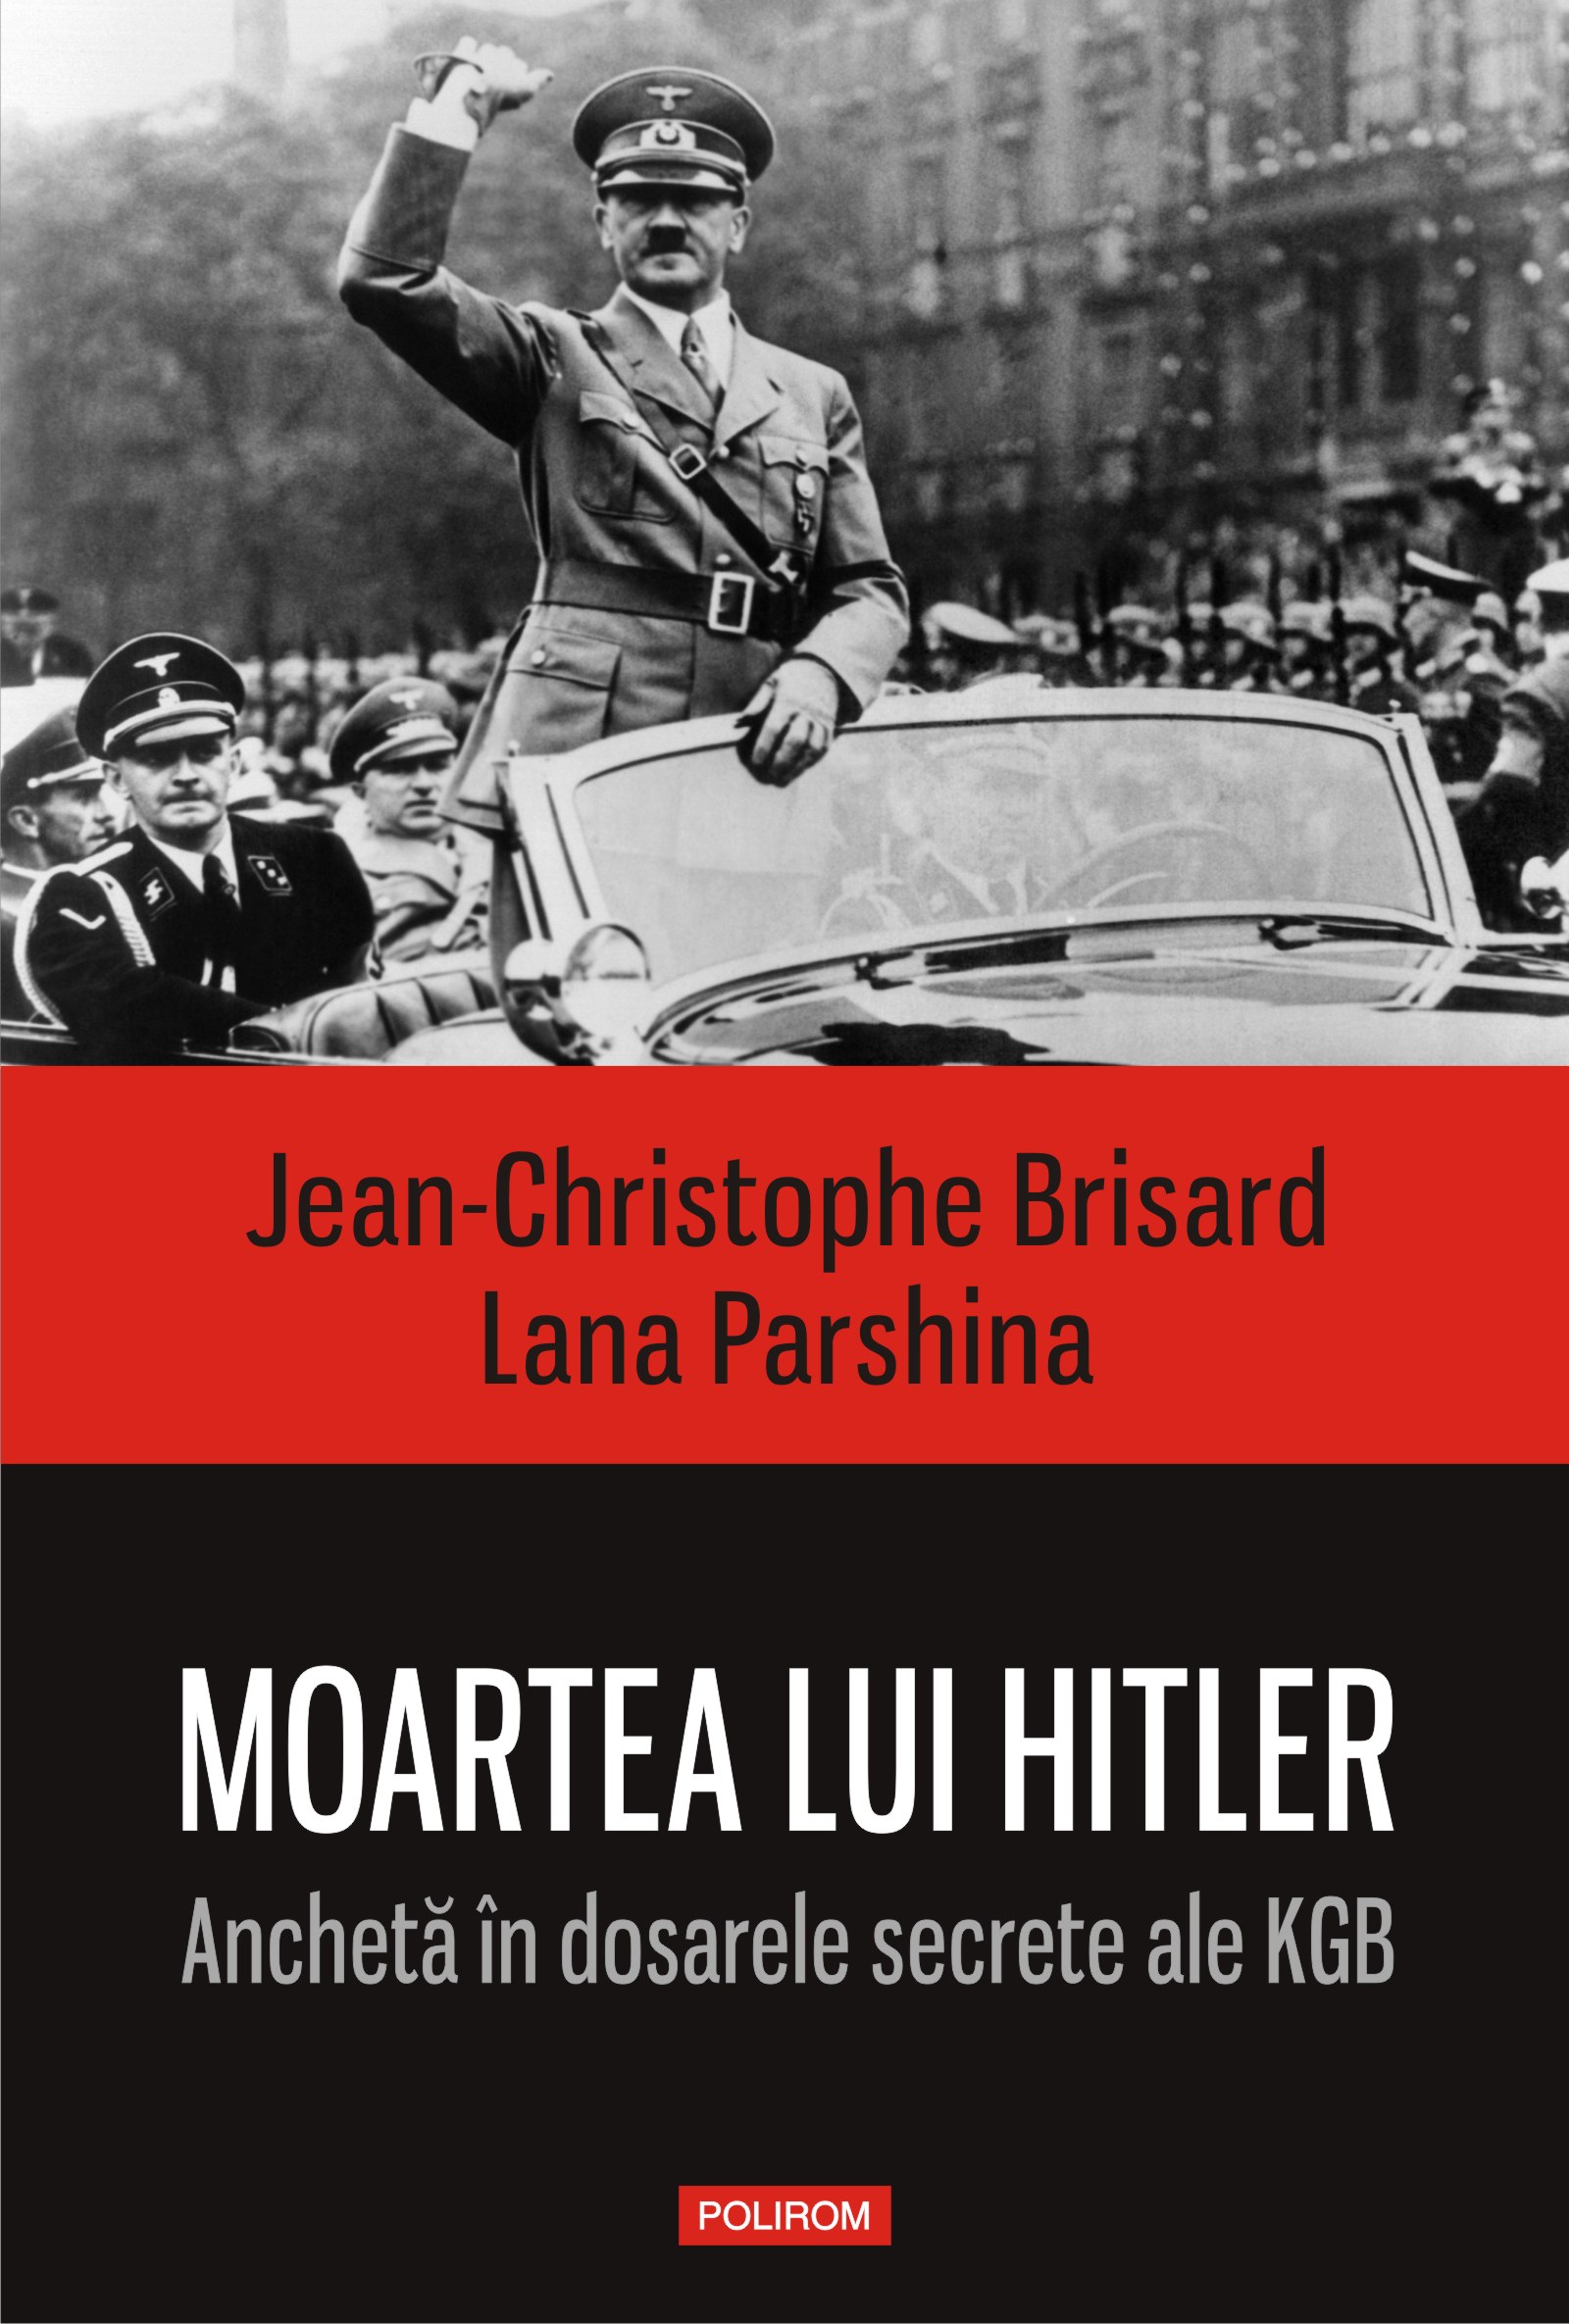 eBook Moartea lui Hitler in dosarele secrete ale KGB-ului - Jean-Christophe Brisard